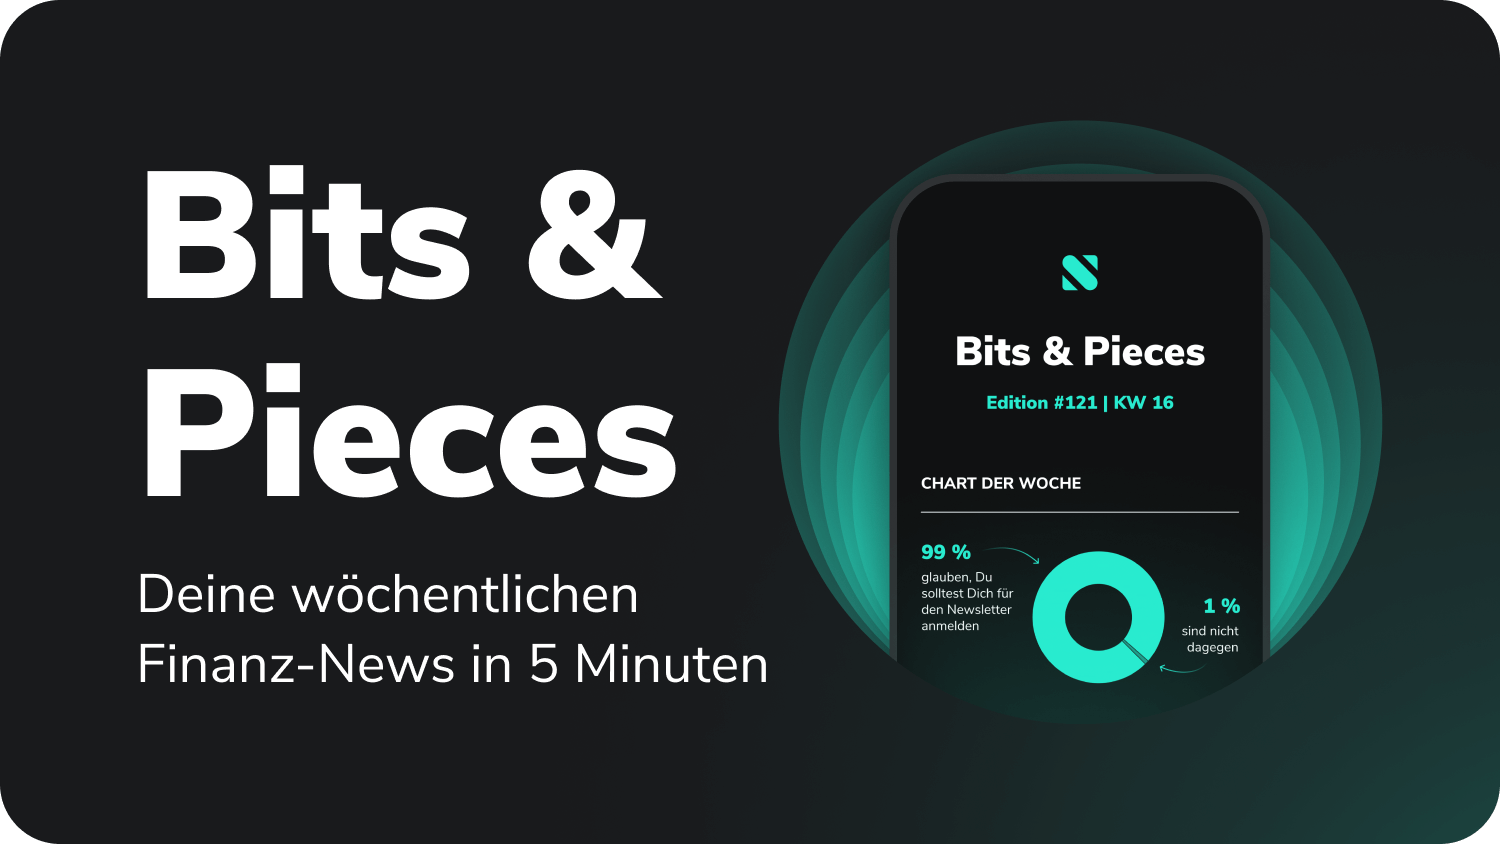 Bits & Pieces. Deine wöchentlichen Finanz-News in 5 Minuten